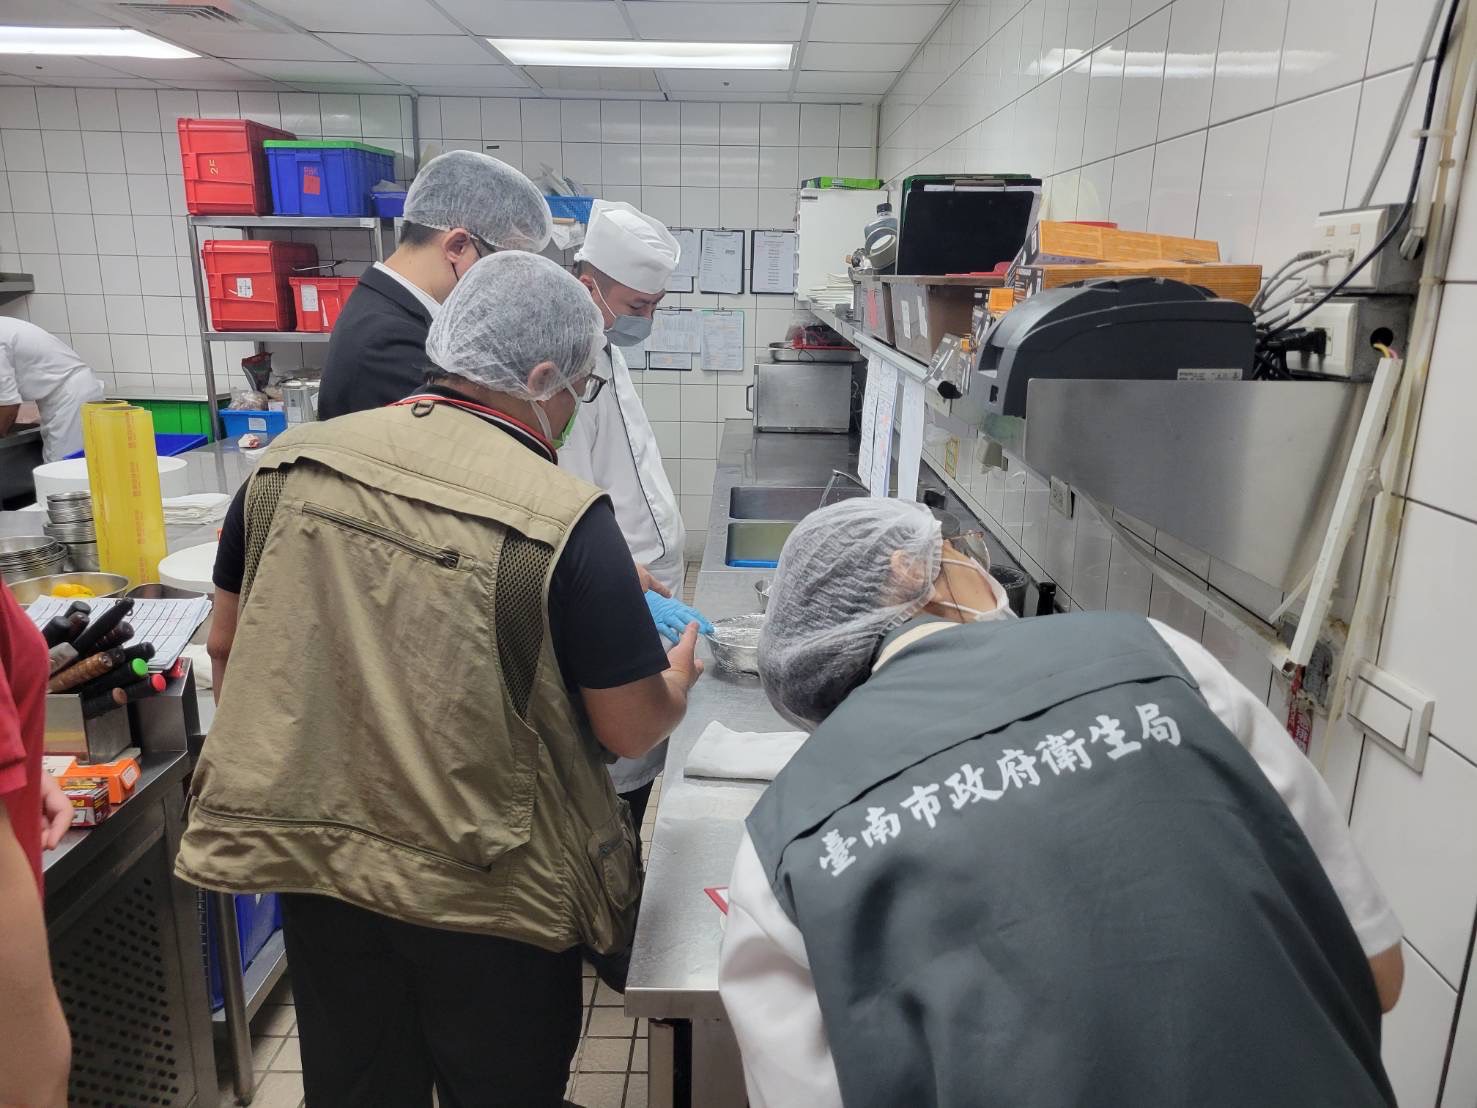 台南晶英酒店疑似食品中毒案檢出腸炎弧菌 